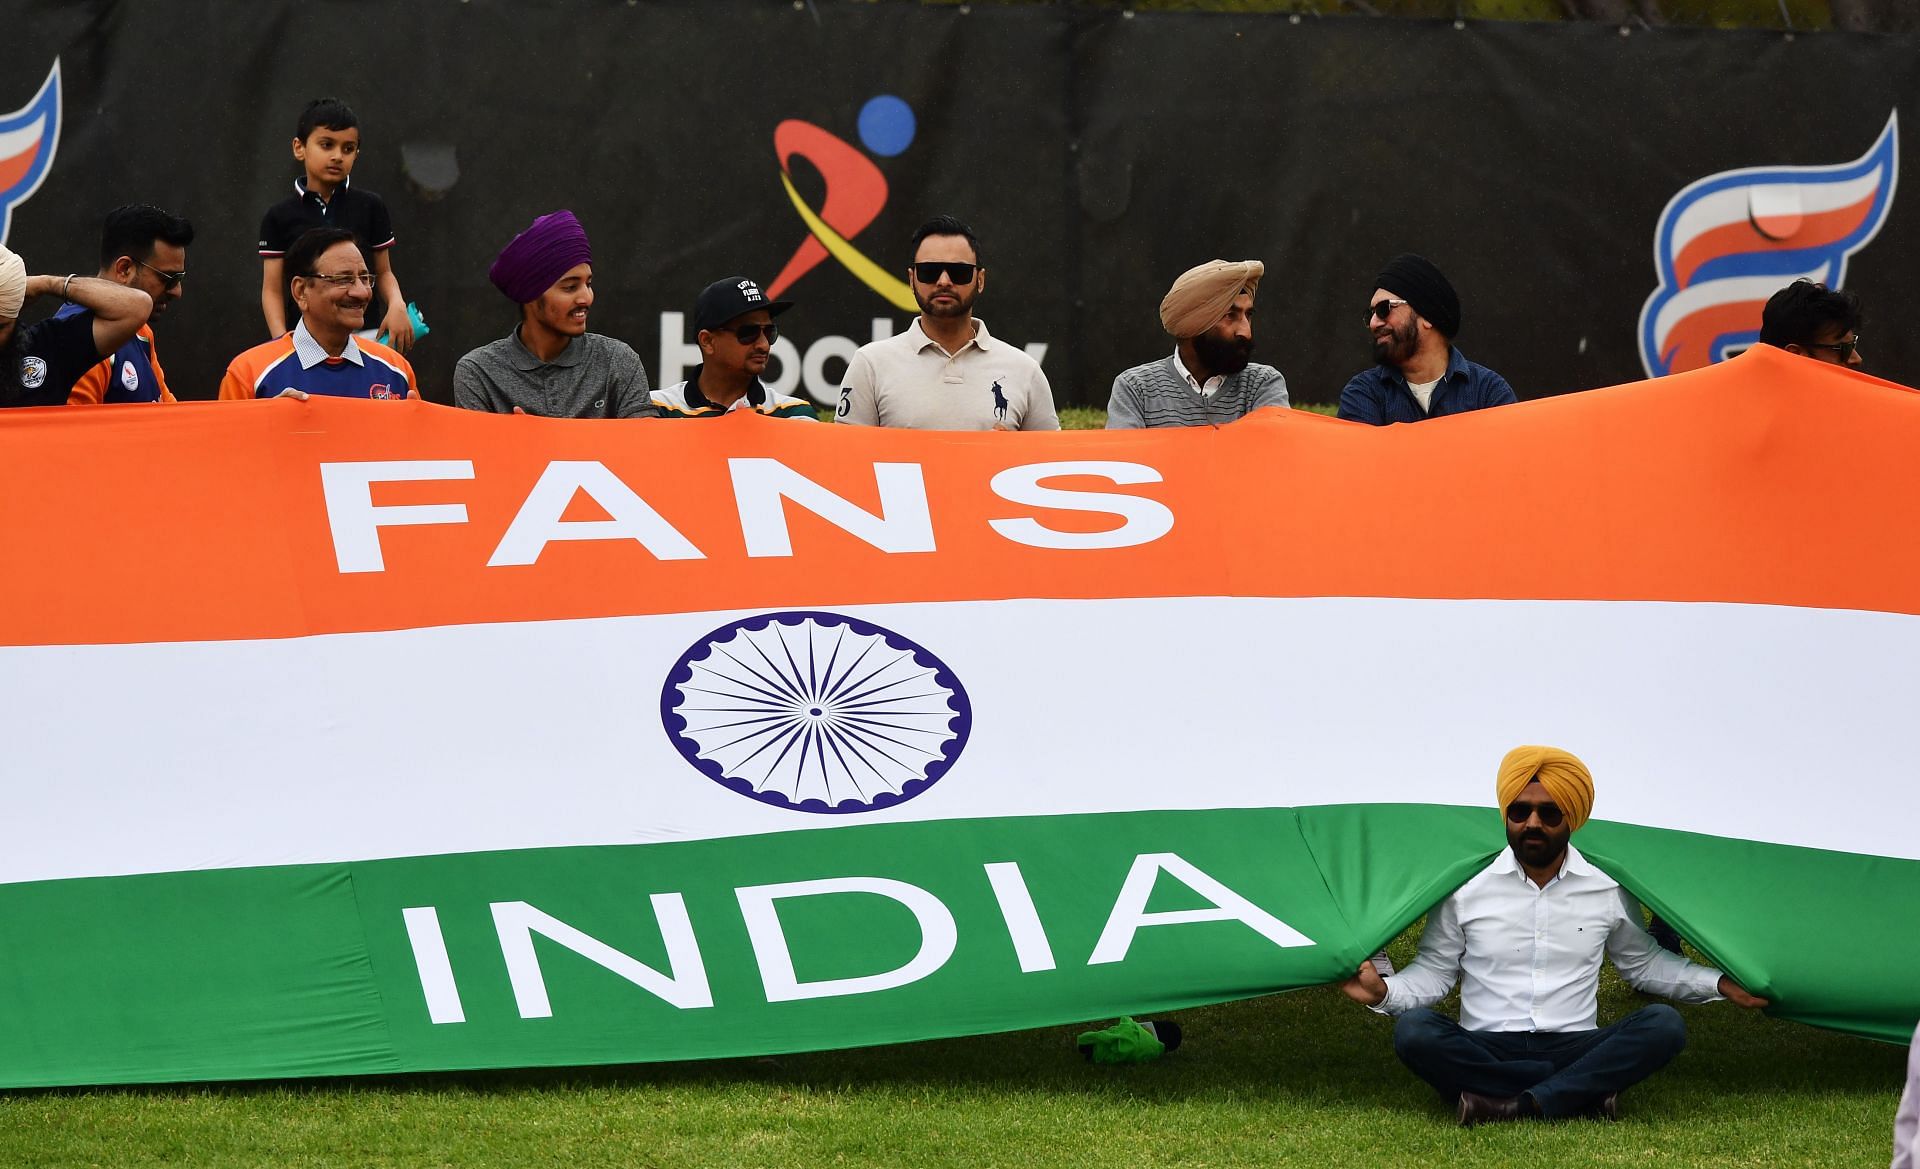 Australia v India International Hockey Test Series: Game 2